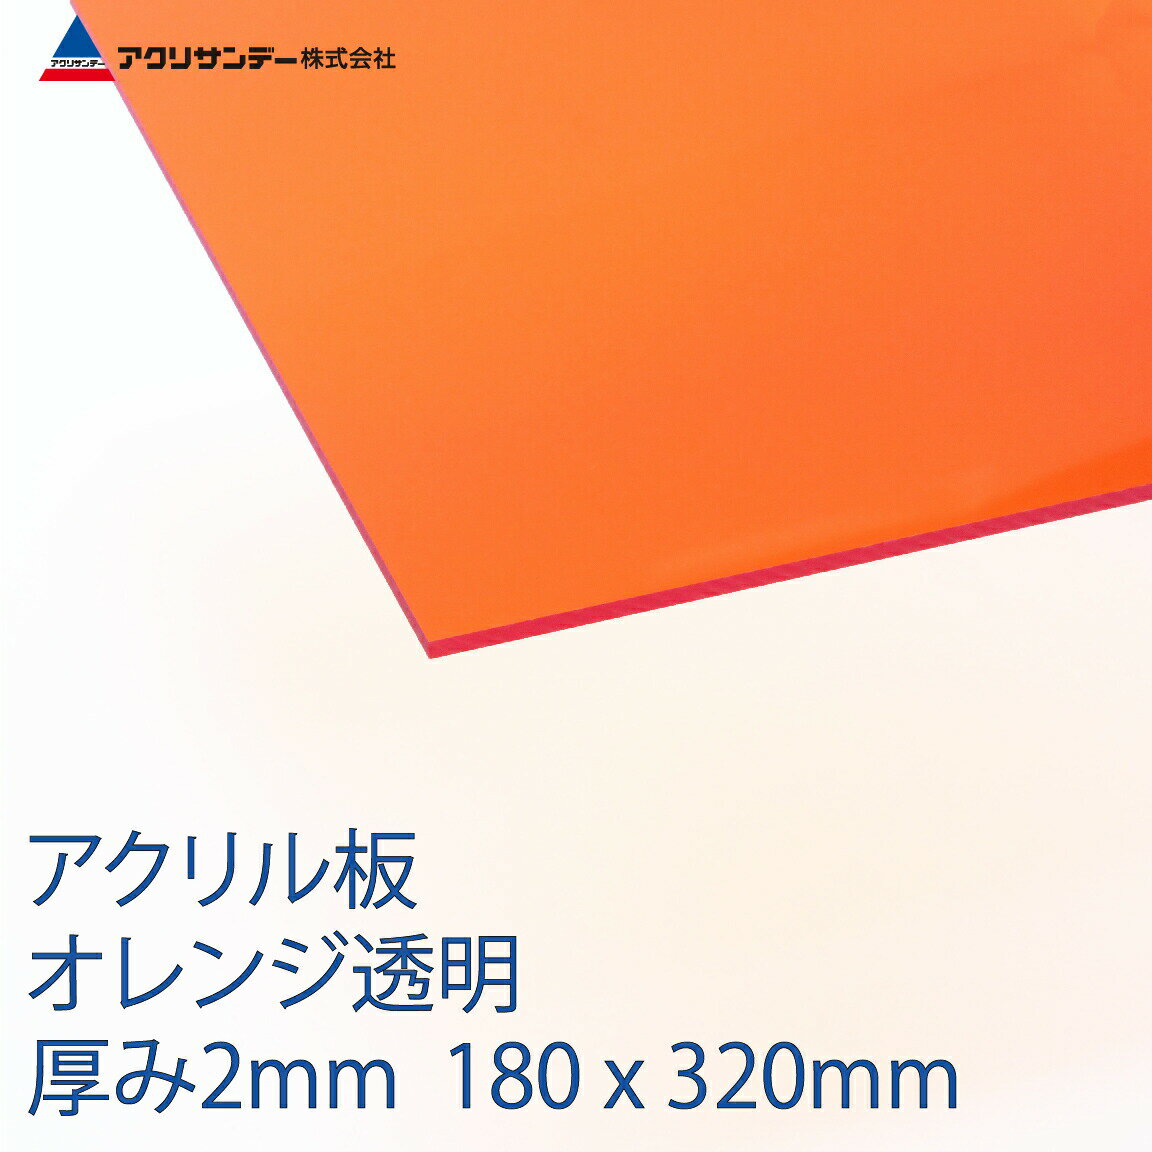 アクリル オレンジ(252) 透明 厚み2mm 180×320mm キャスト板 SSサイズ プラスチック 色板 DIY アクリサンデー